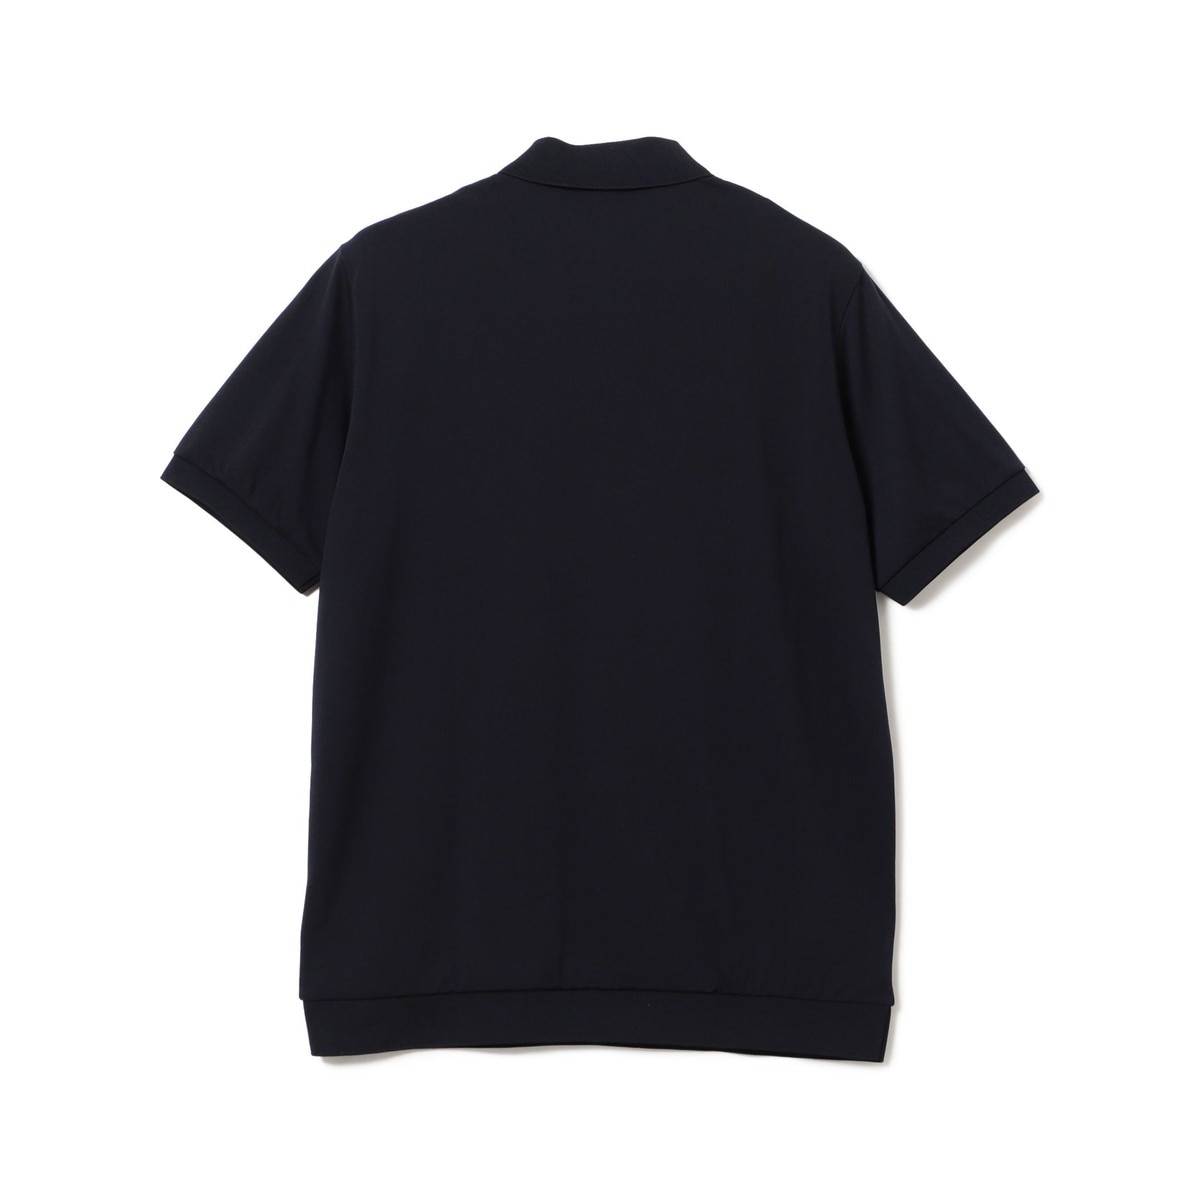 LACOSTE for BEAMS GOLF 別注 ショールカラー ポロシャツ(半袖シャツ